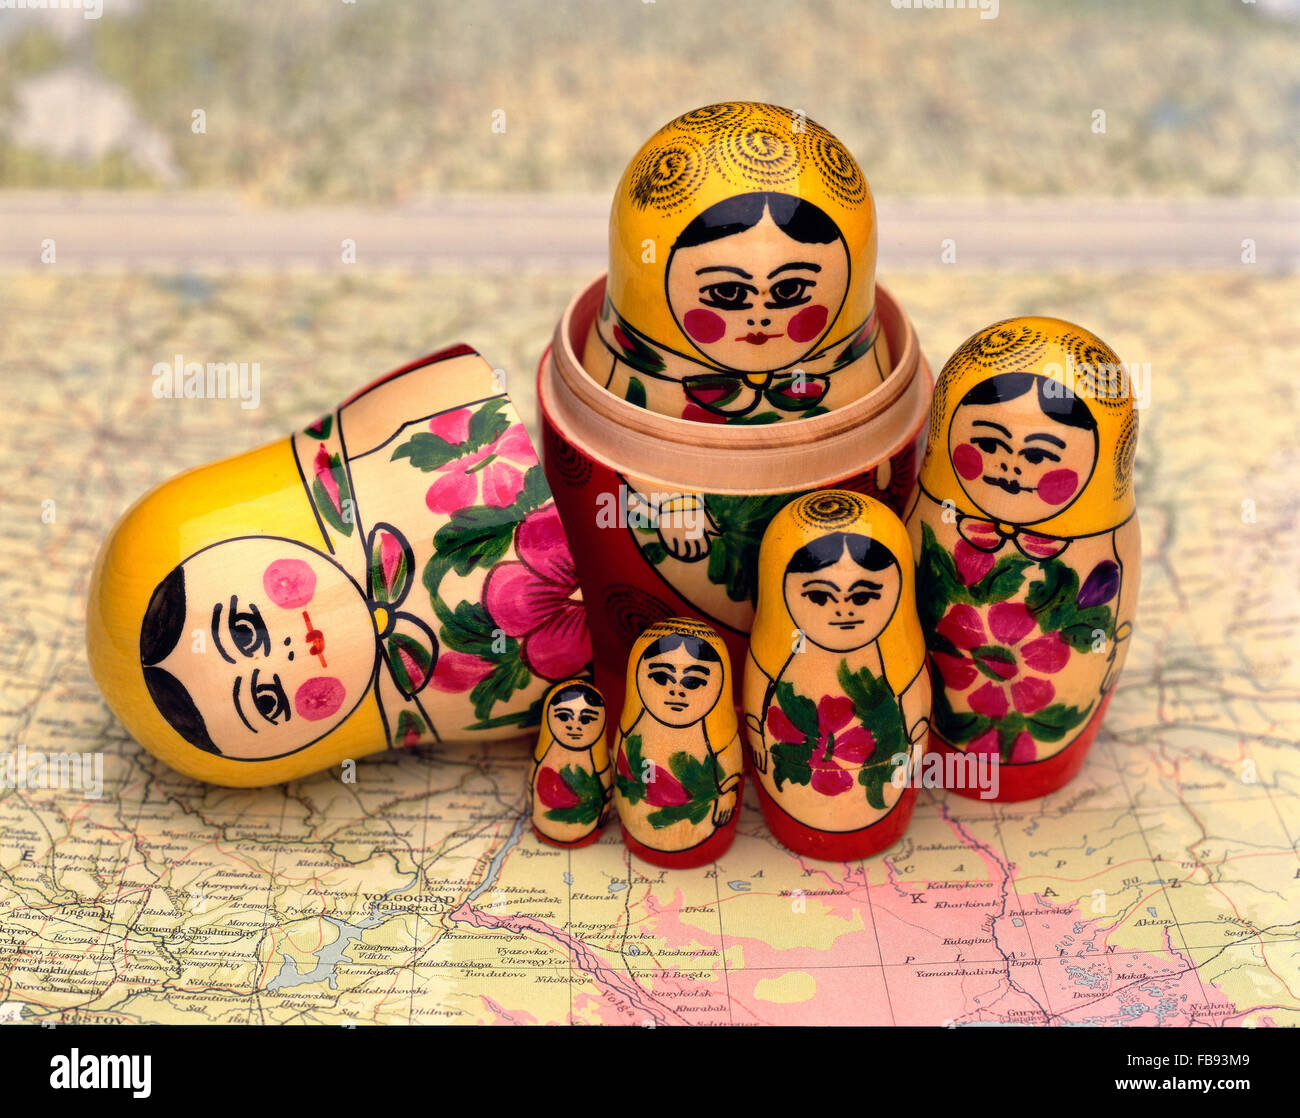 Une poupée matriochka en bois, aussi connu comme une poupée russes d'emboîtement, sur une carte de la Russie Banque D'Images